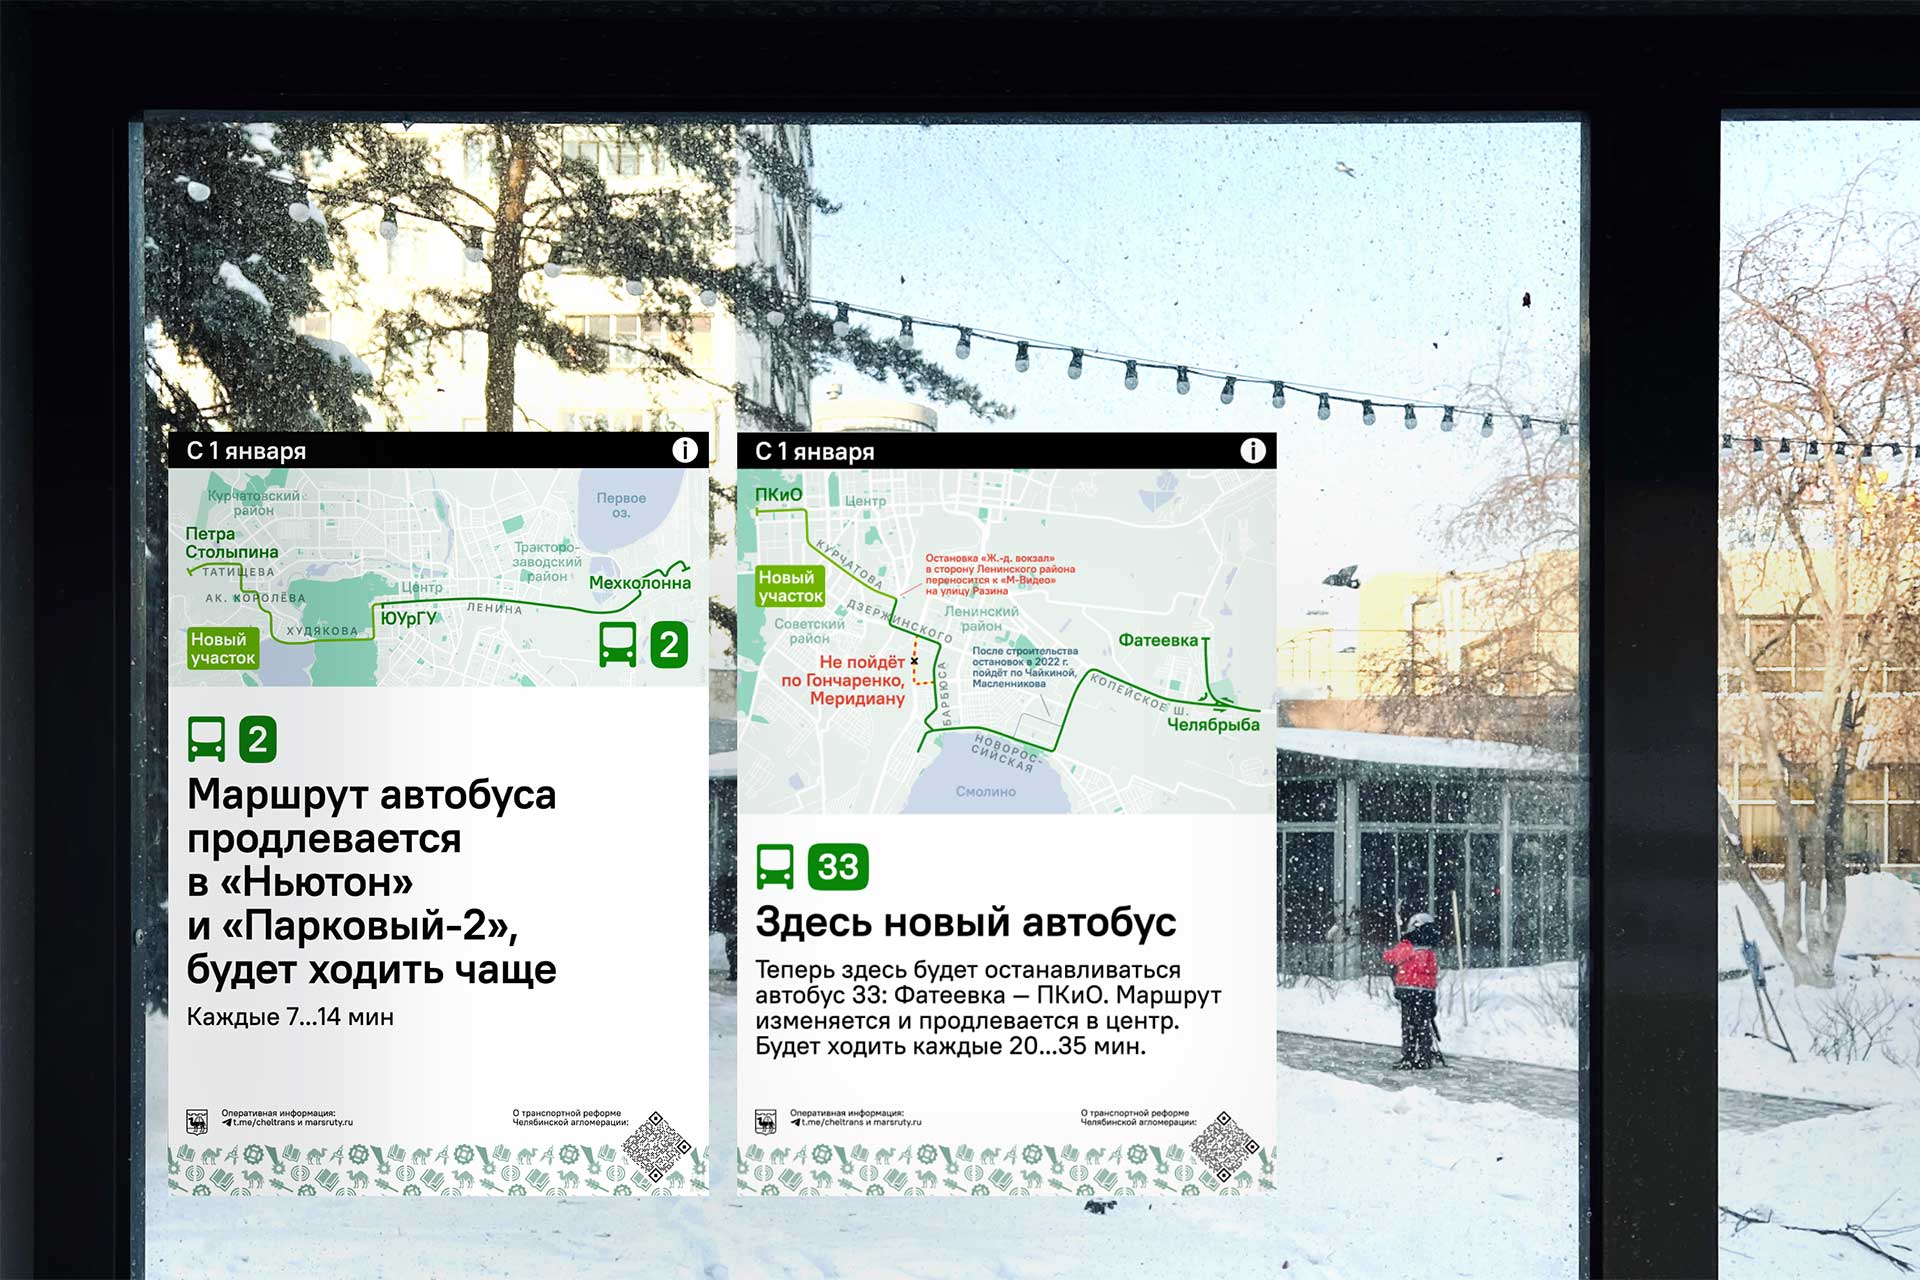 Chelyabinsk transit reform communication